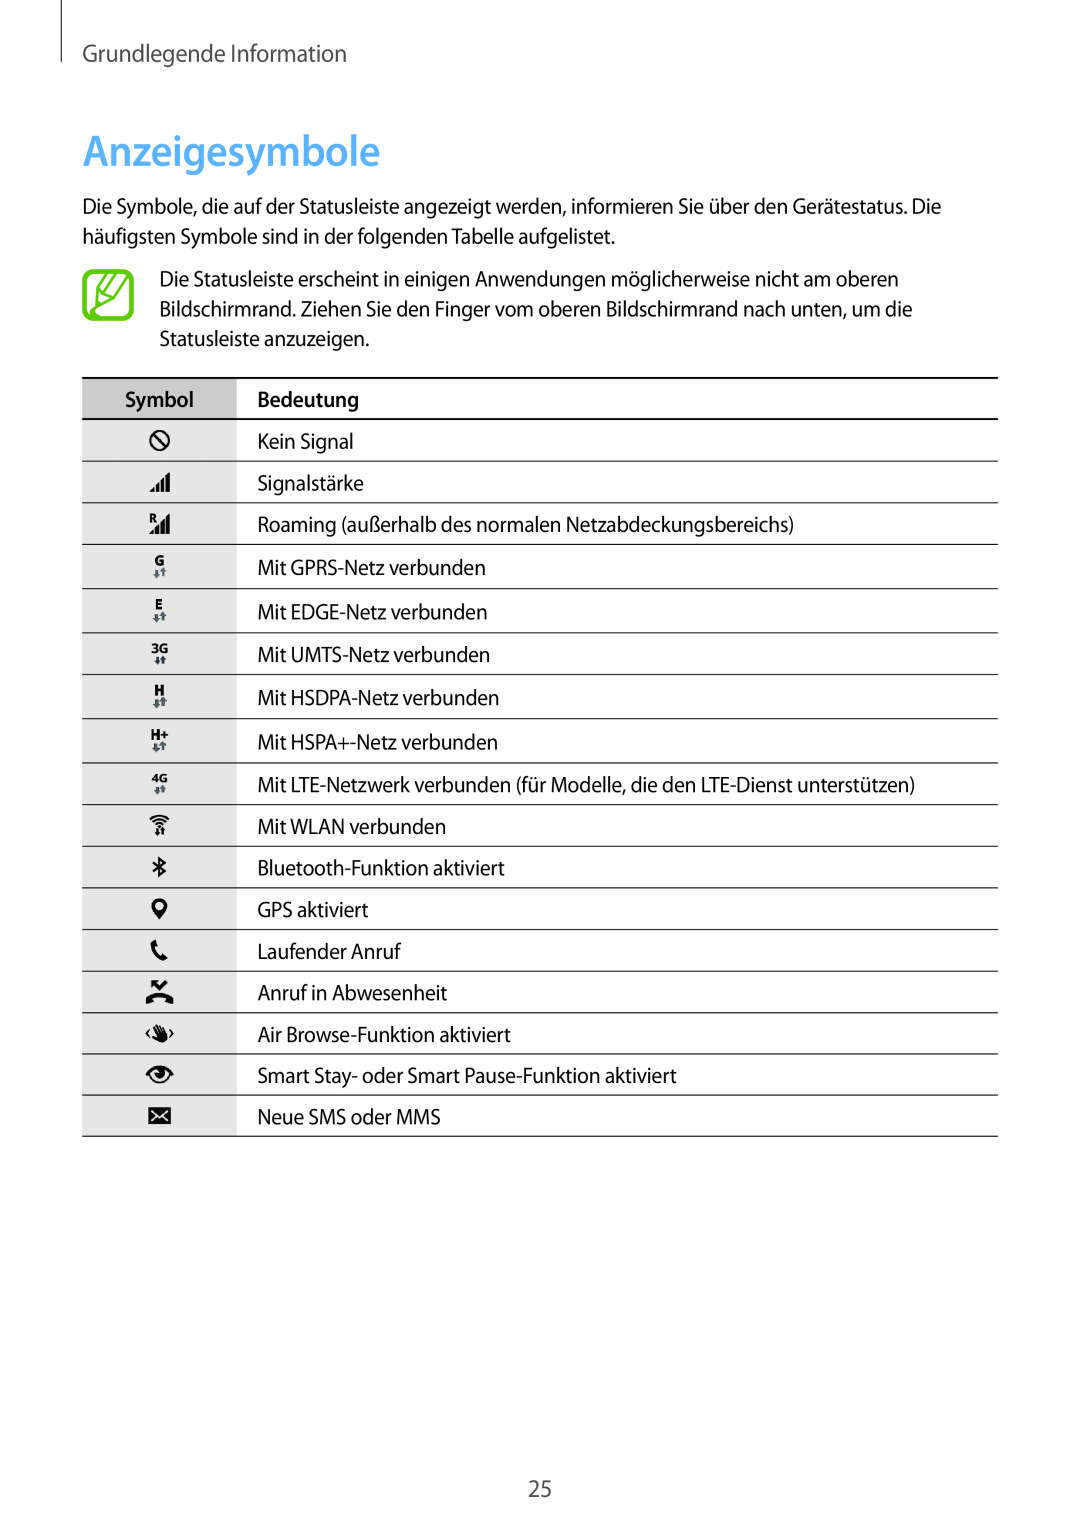 Samsung SM-G901FZKABAL, SM-G901FZKACOS, SM-G901FZDABAL manual Anzeigesymbole, Symbol Bedeutung, Grundlegende Information 